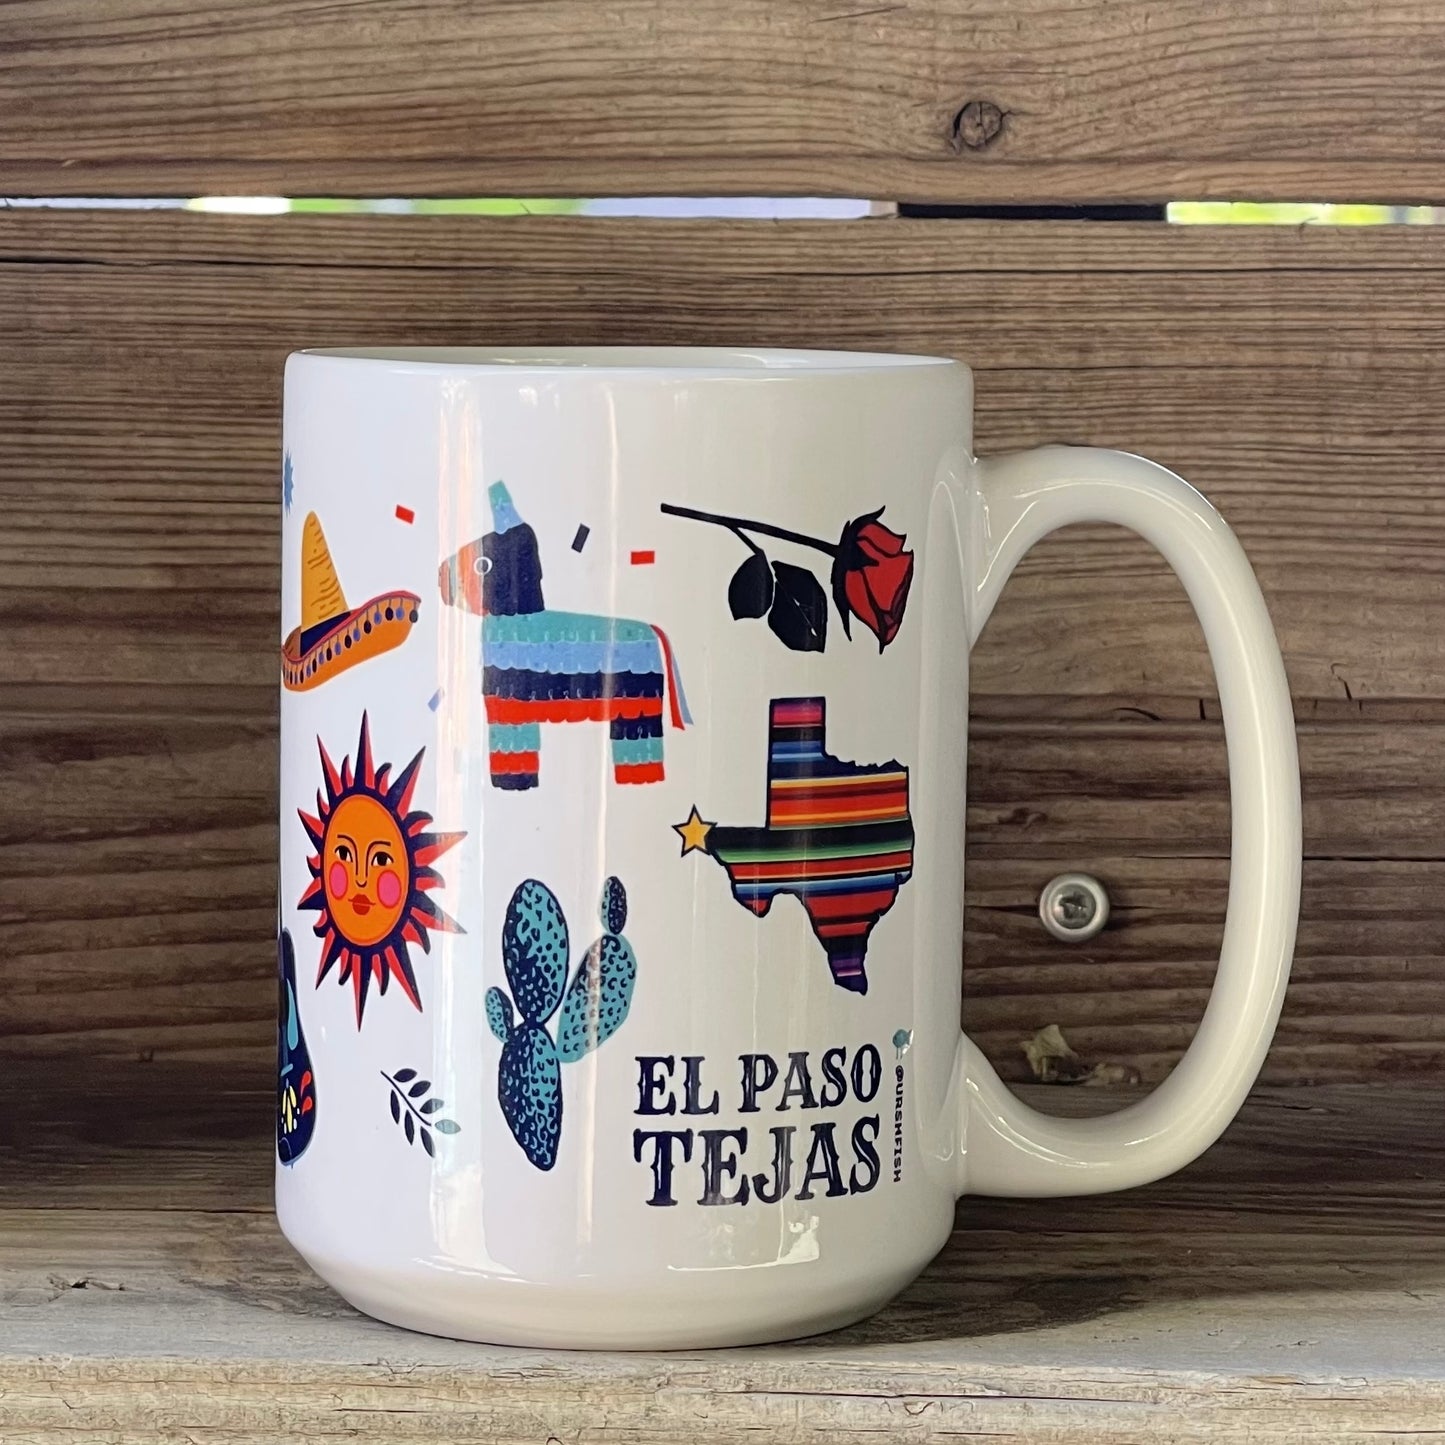 El Paso Ceramic Mugs